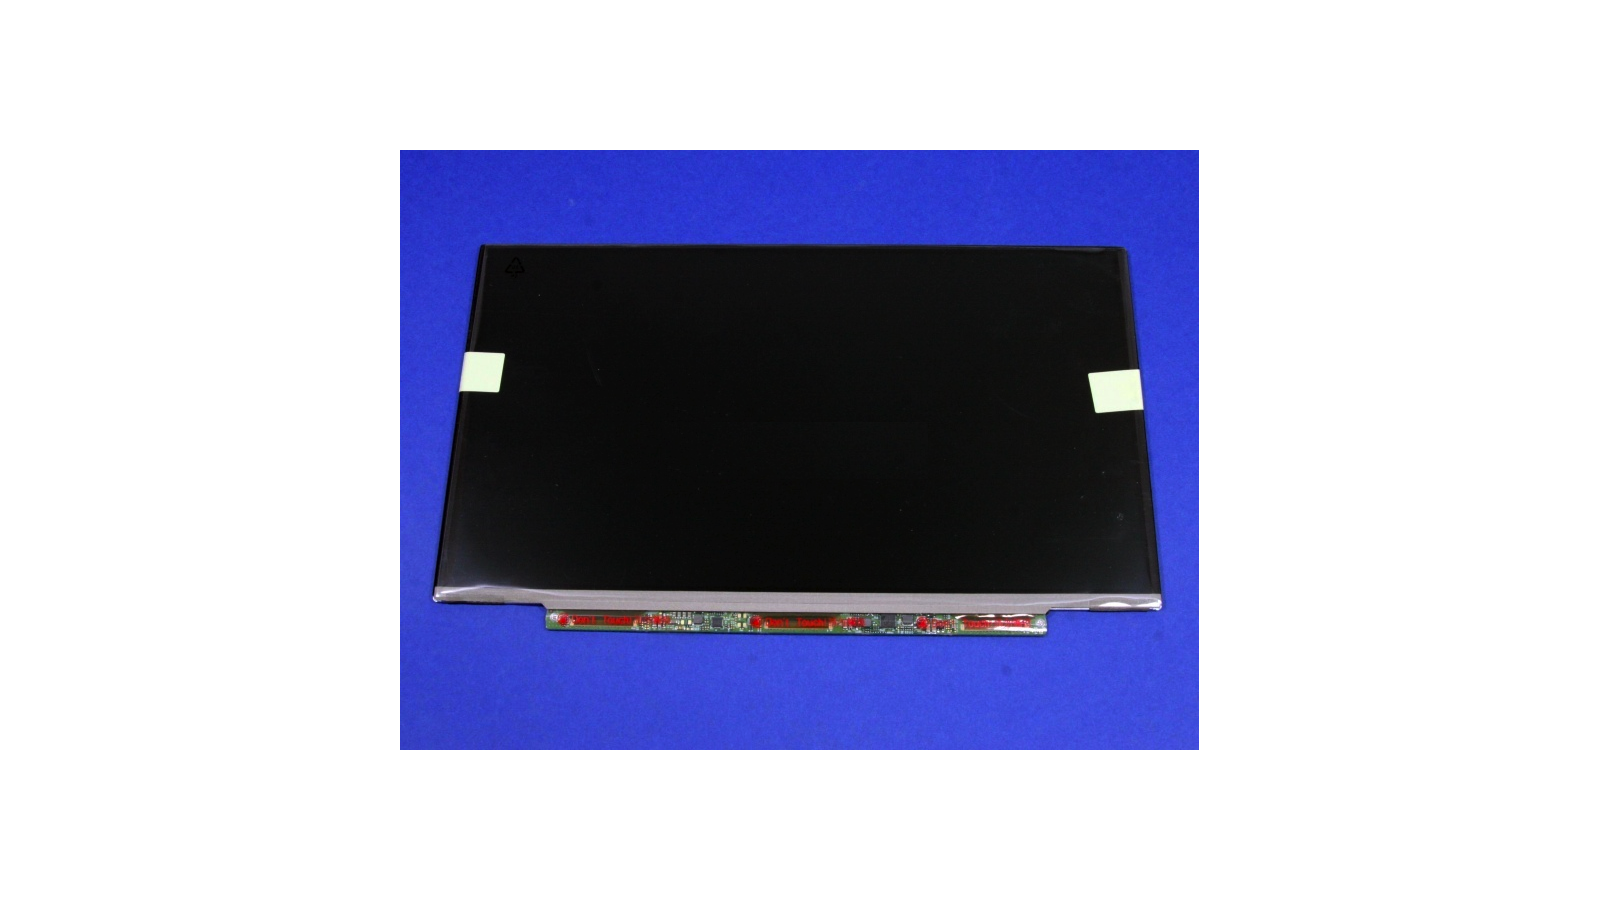 Display LCD Schermo 13,3 Led compatibile con Toshiba Satellite Z930